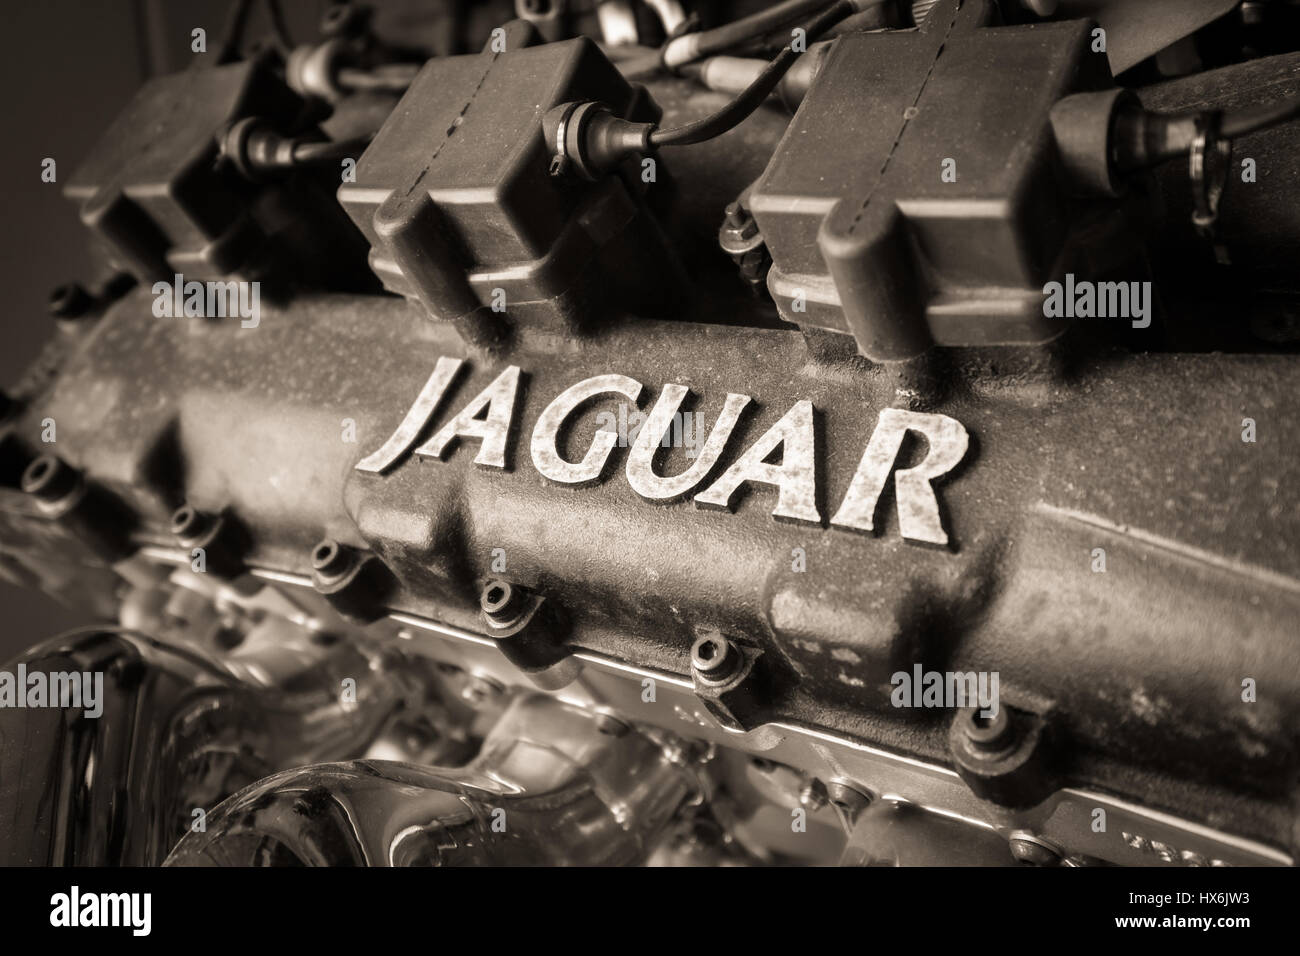 WEYBRIDGE, SURREY, UK - 9. August 2015: Nahaufnahme von schwarzen und weißen Oldtimer Jaguar-Enigine im Brooklands Motor Museum im Jahr 2015. Stockfoto